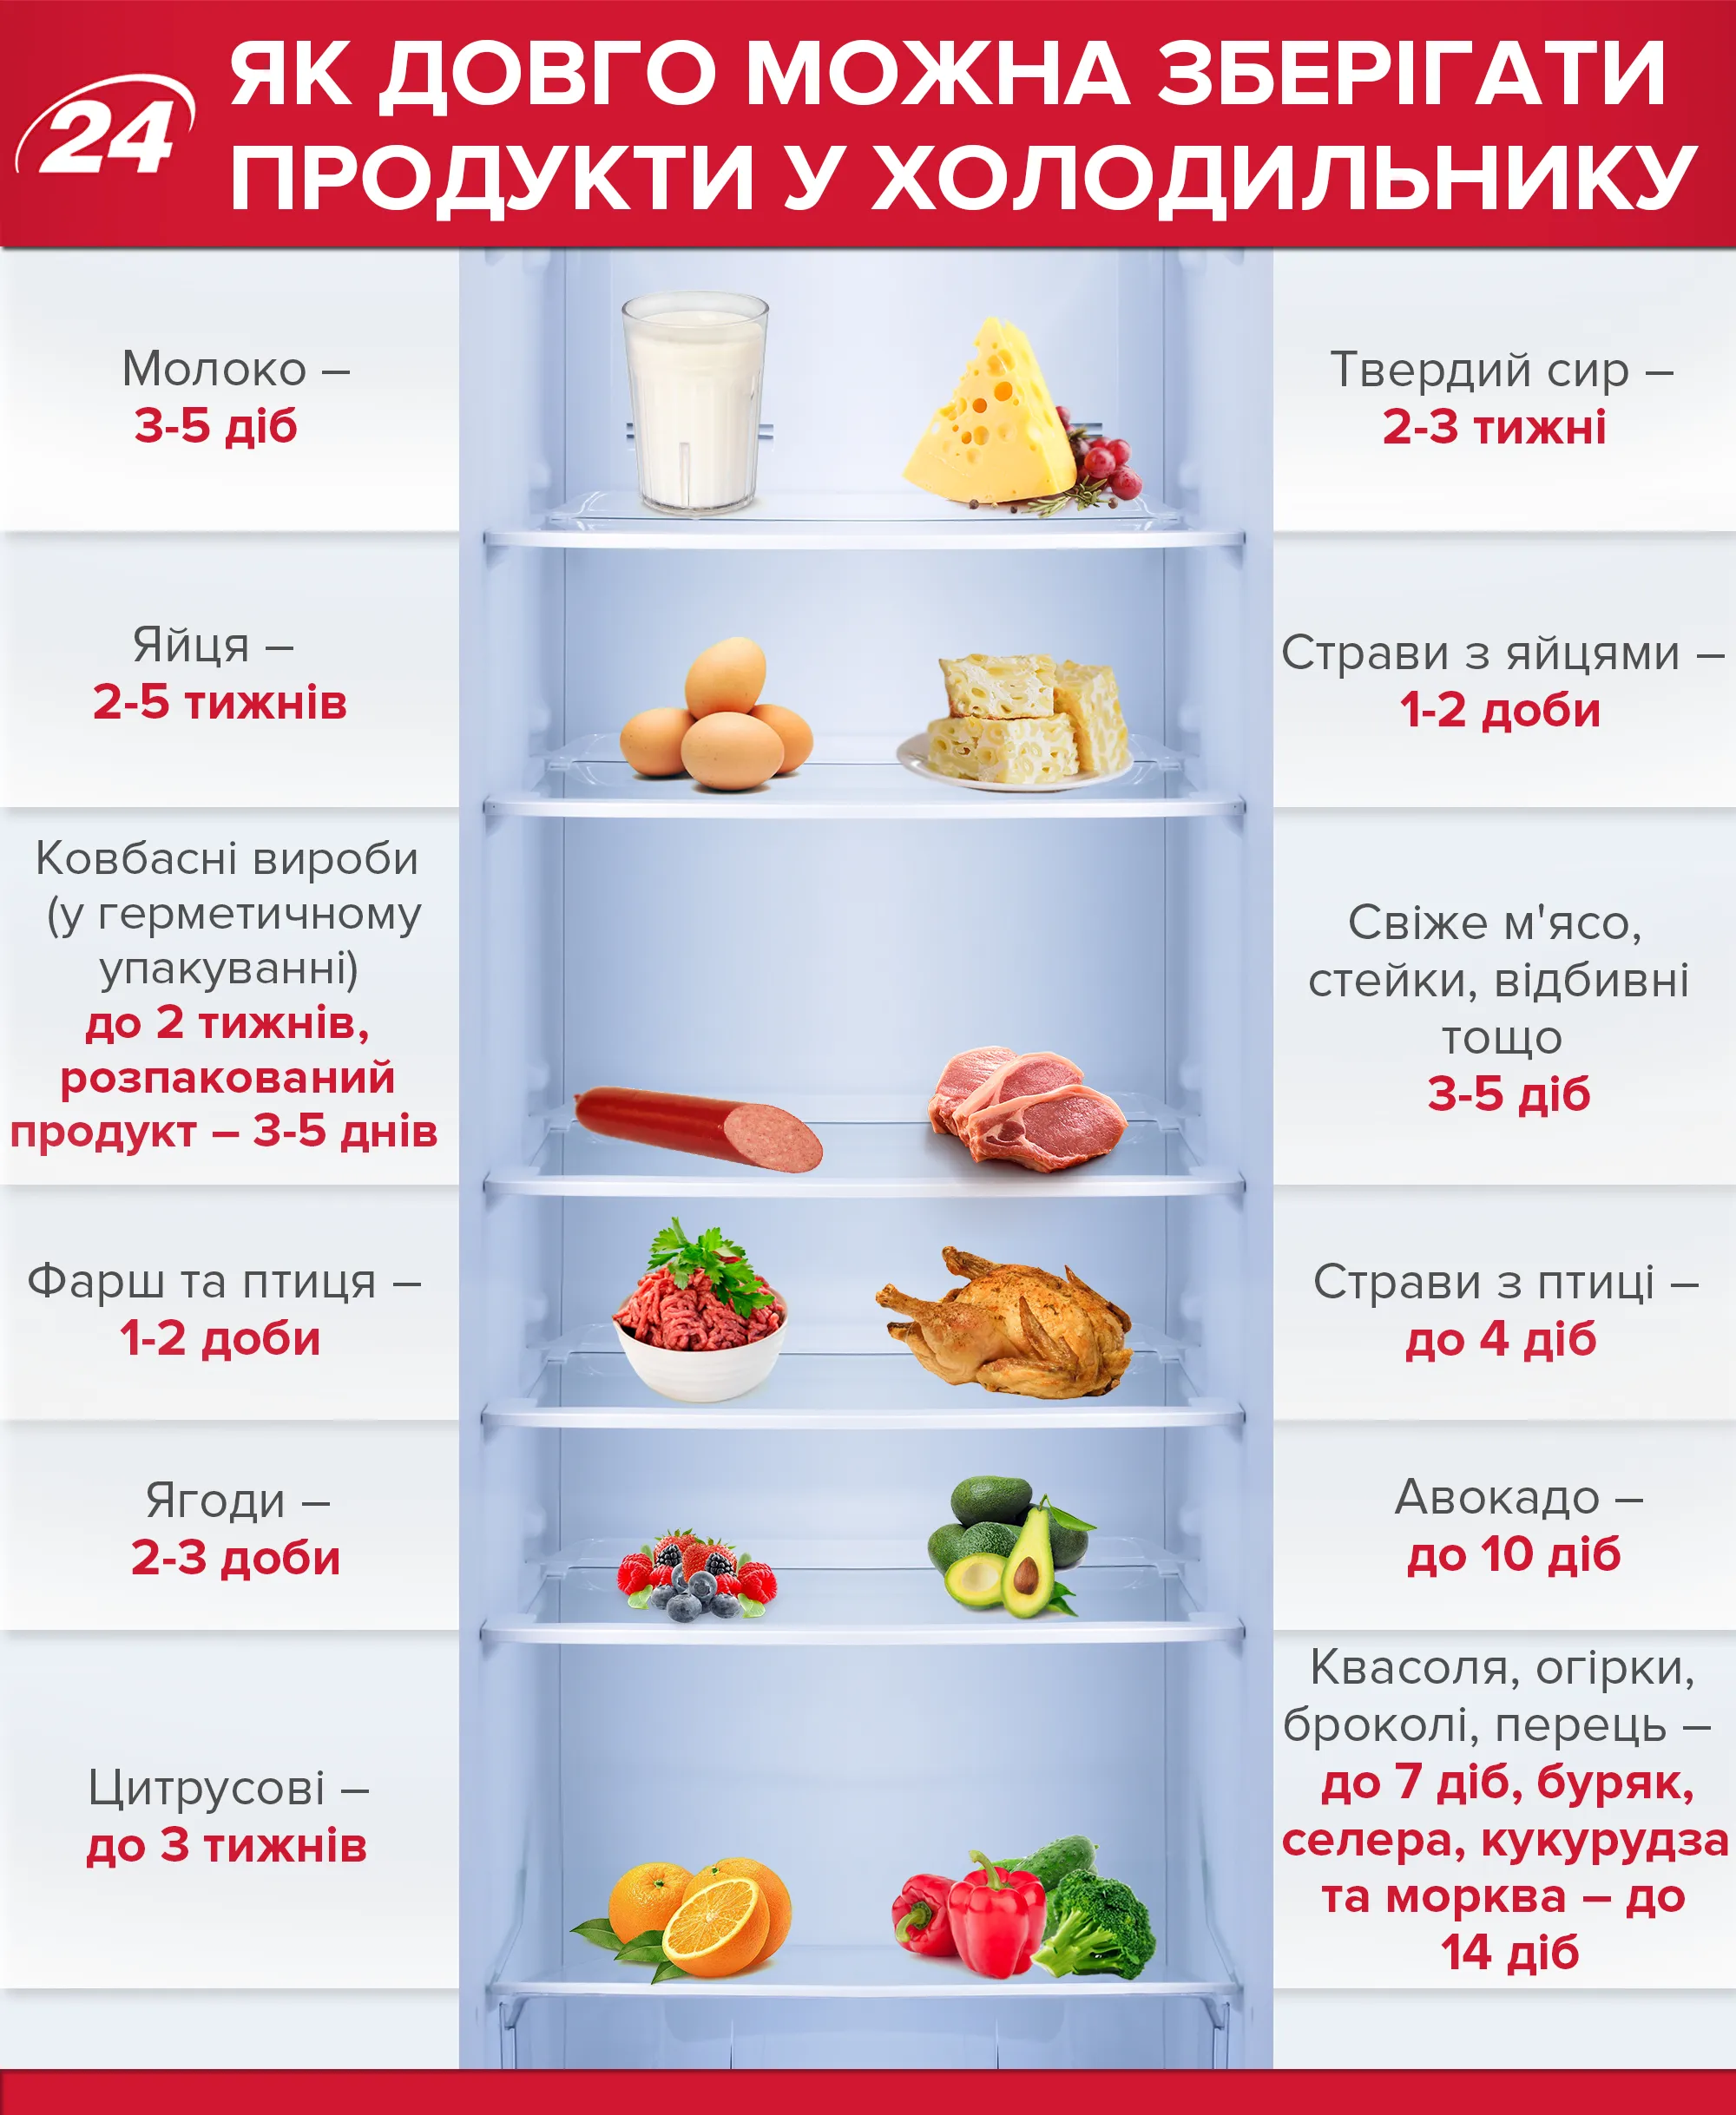 Сколько времени можно хранить продукты в холодильнике